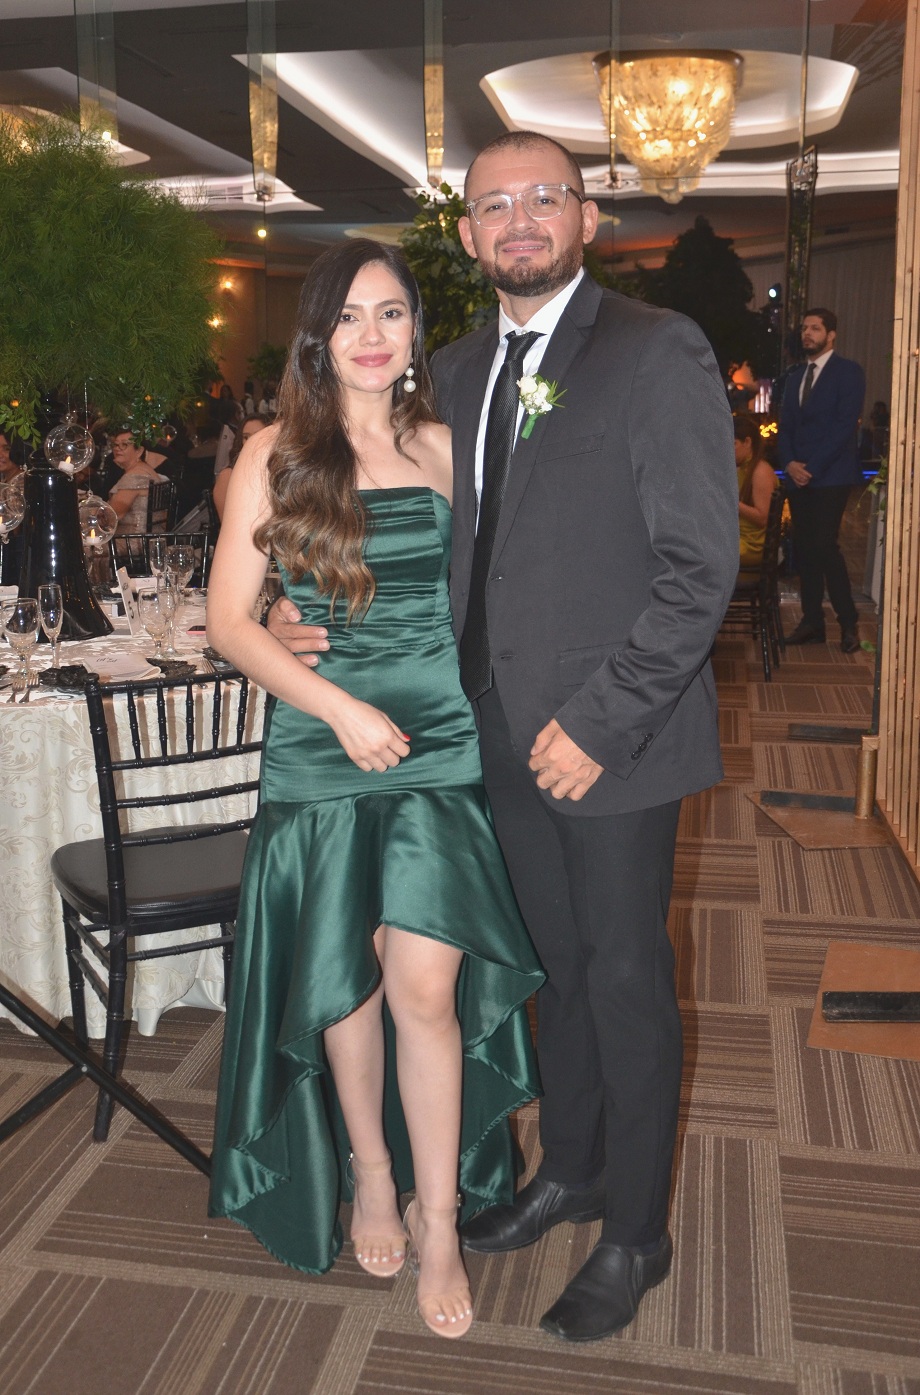 La boda de Carolina Torres y Nino Rivera… el uno para el otro